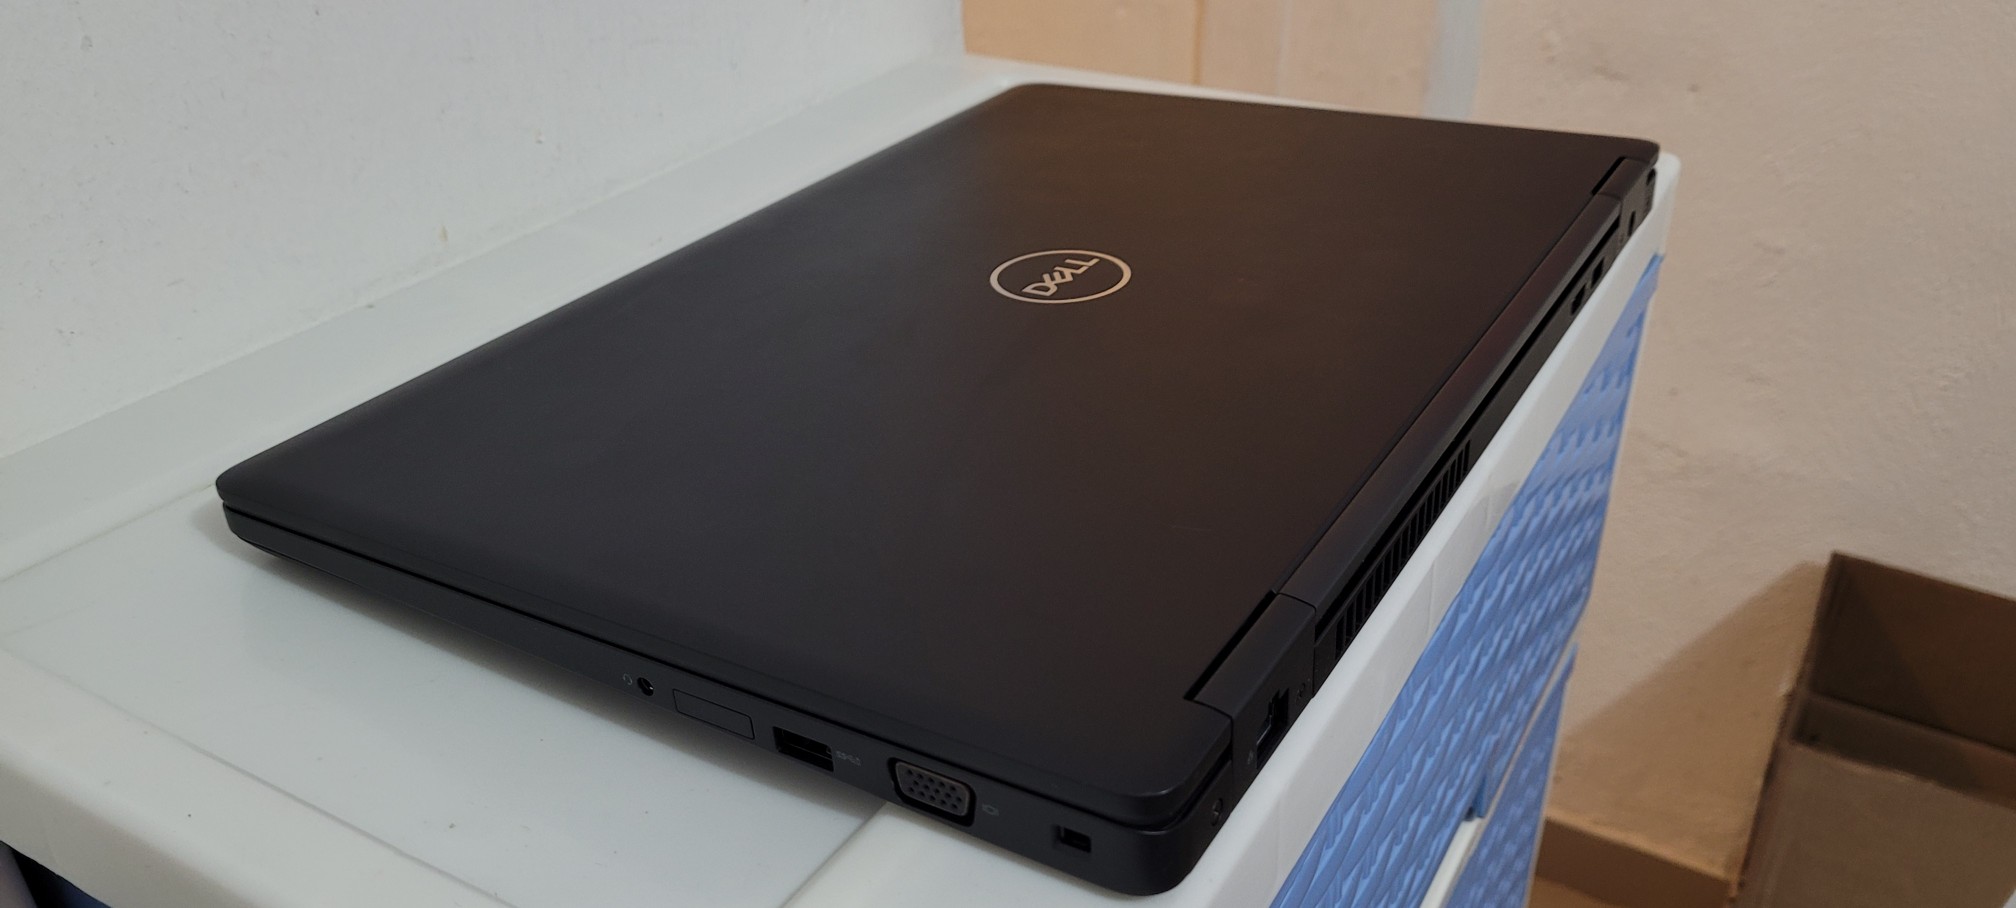 computadoras y laptops - Dell 5590 17 Pulg Core i7 8va Gen Ram 16gb Disco 512gb Video 8gb Full 2